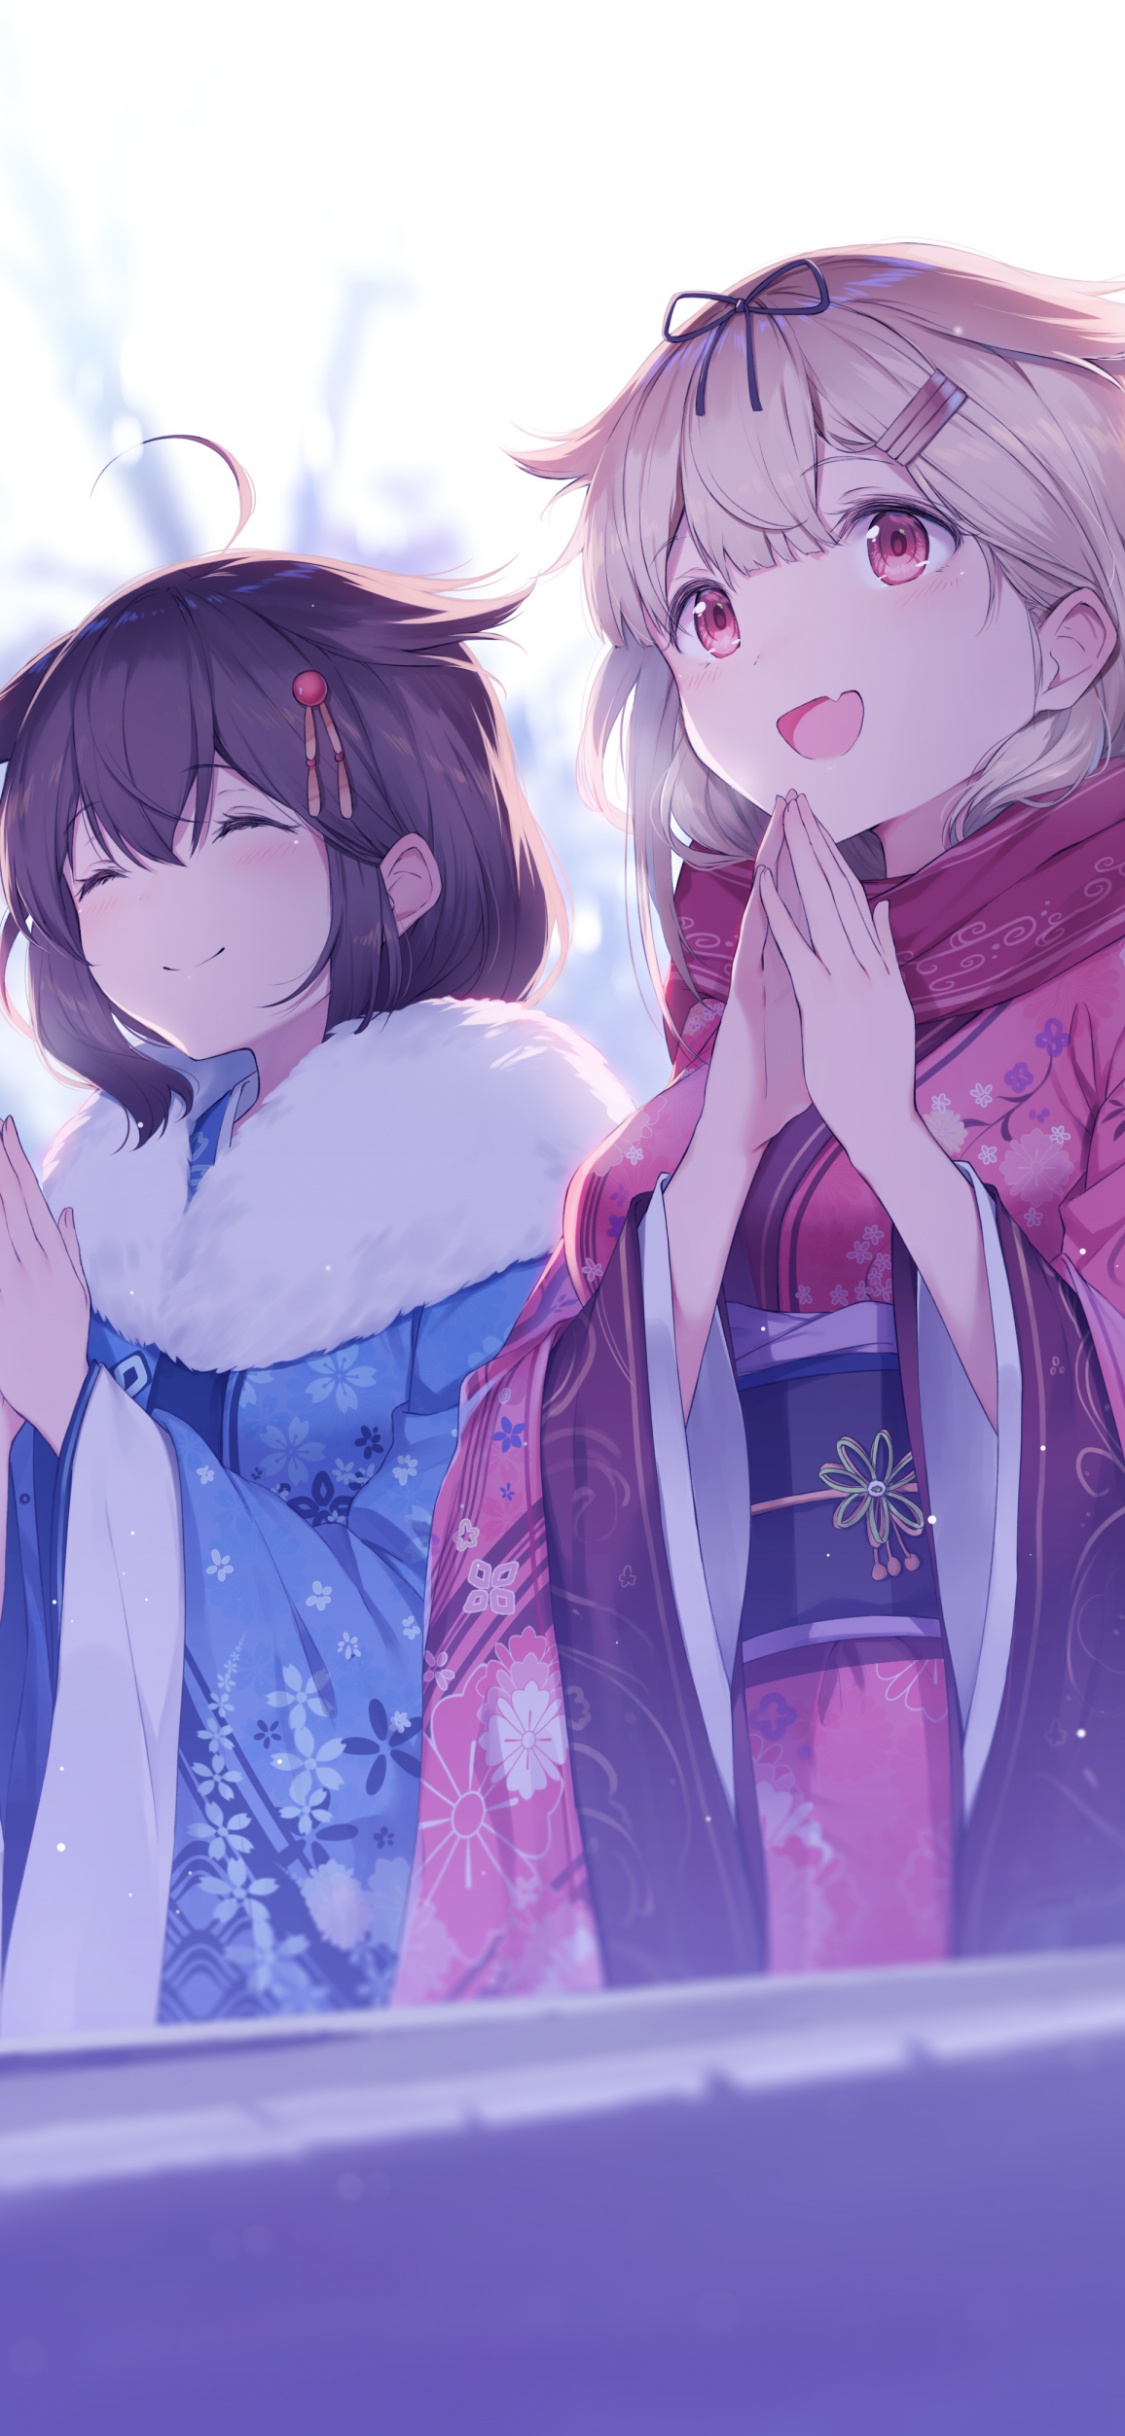 Chica en Personaje de Anime Chaqueta Azul y Blanca. Wallpaper in 1125x2436 Resolution